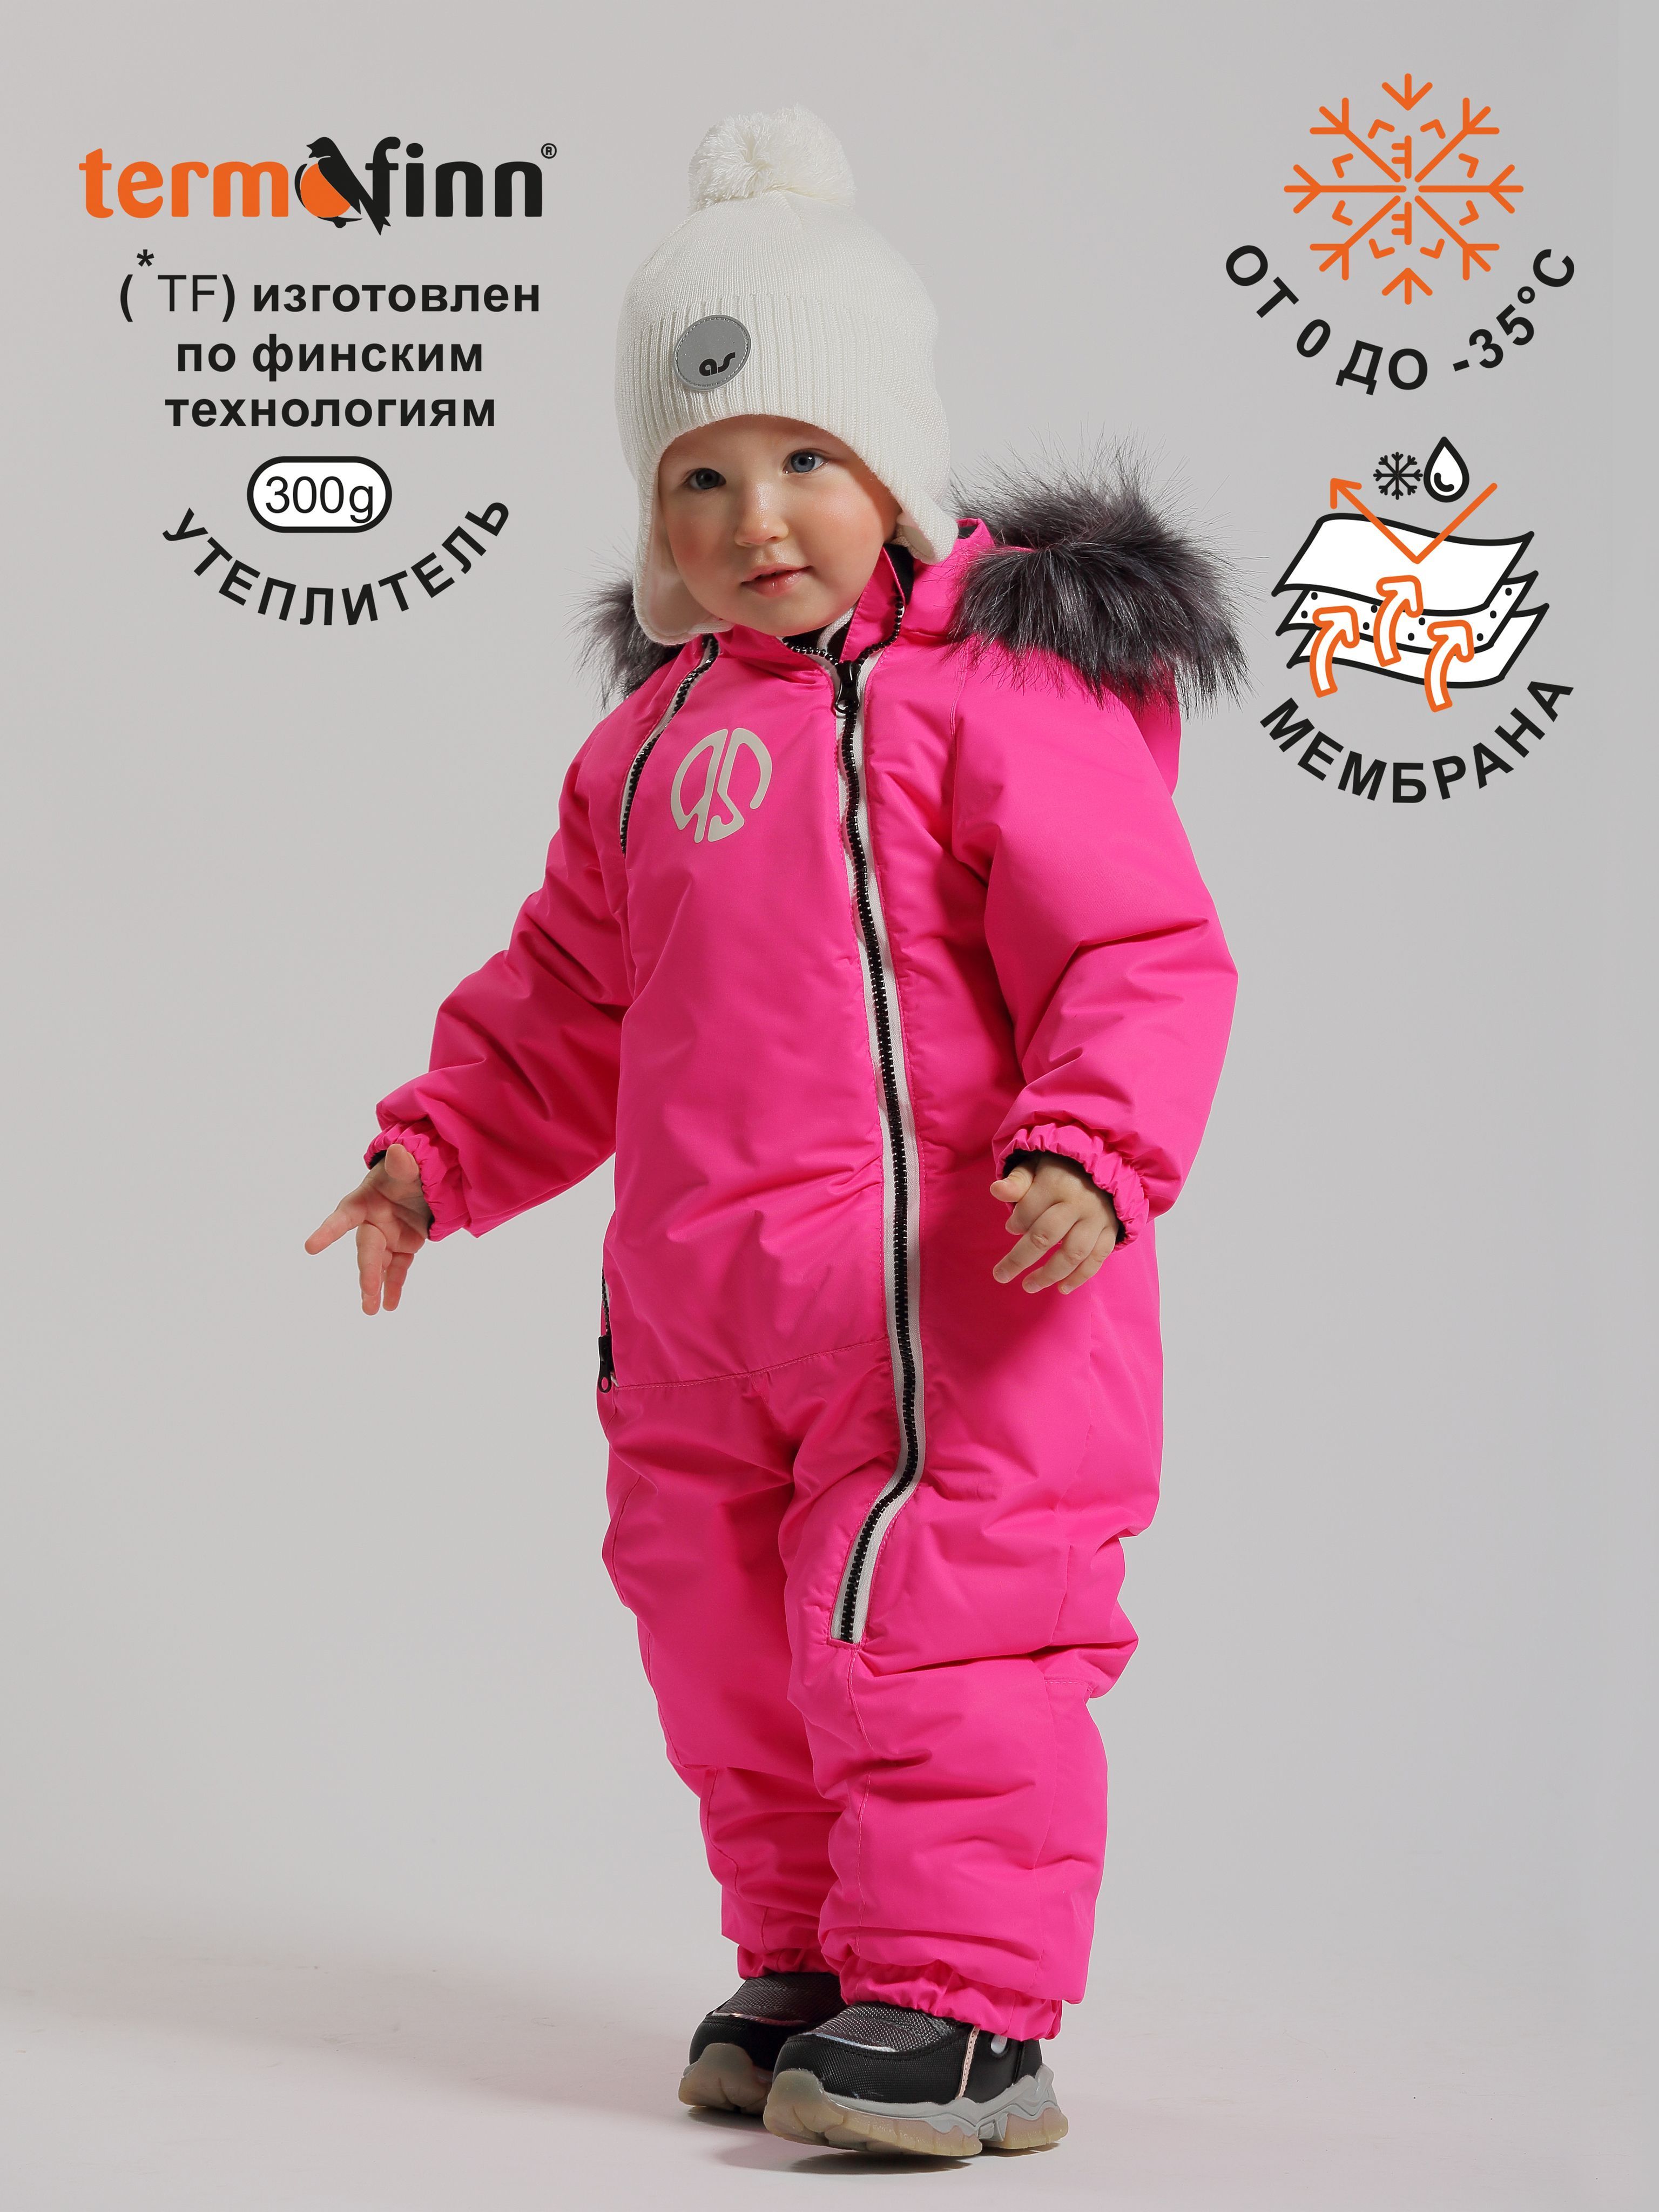 Детский комбинезон на меху тёплый - официальный интернет магазин цены производителя Габби, Украина